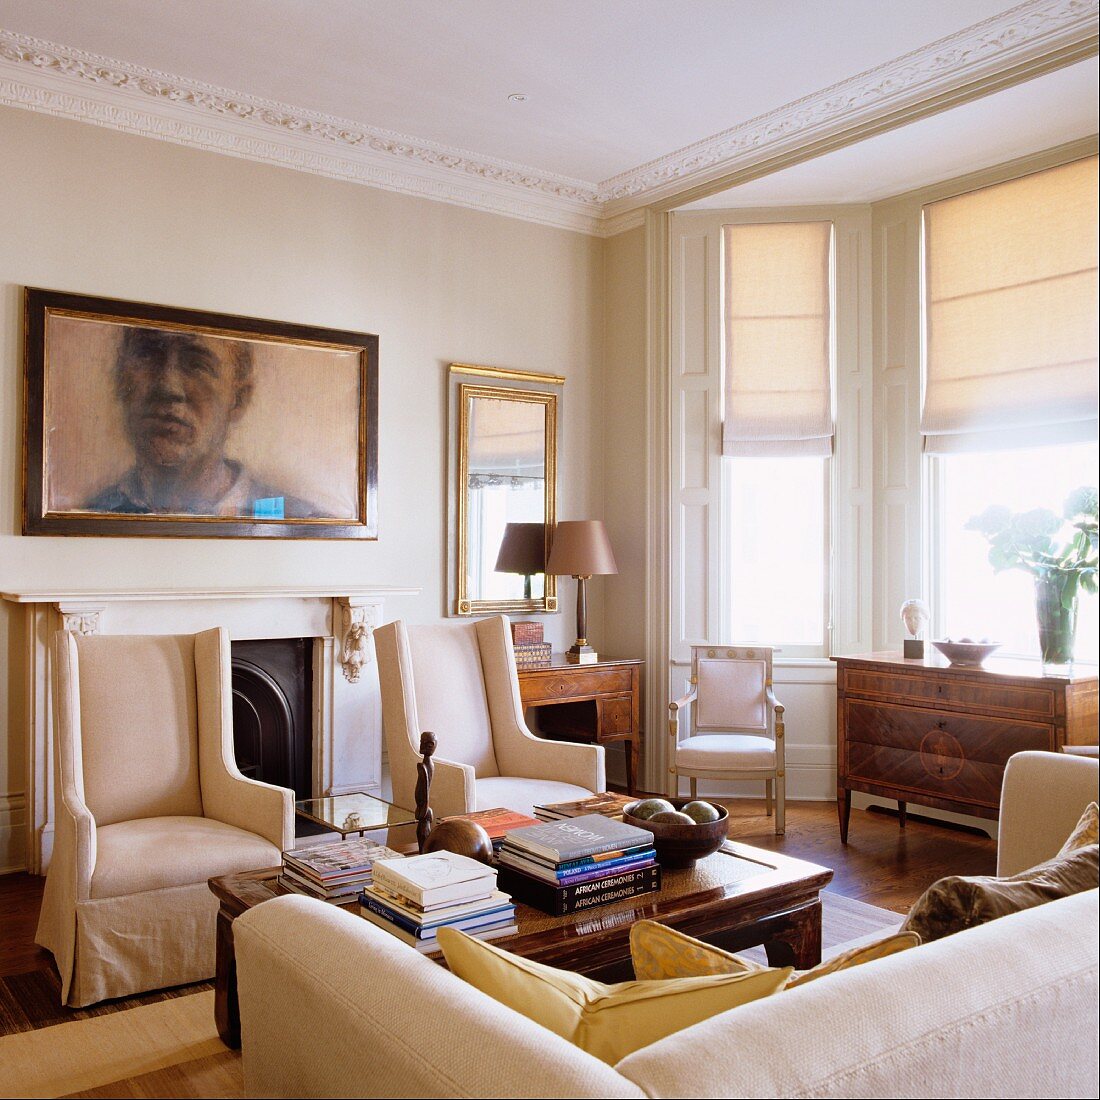 Elegante, helle Sesseln vor Wand mit Portrait im Wohnzimmer mit Stuckfries an Decke und Erker